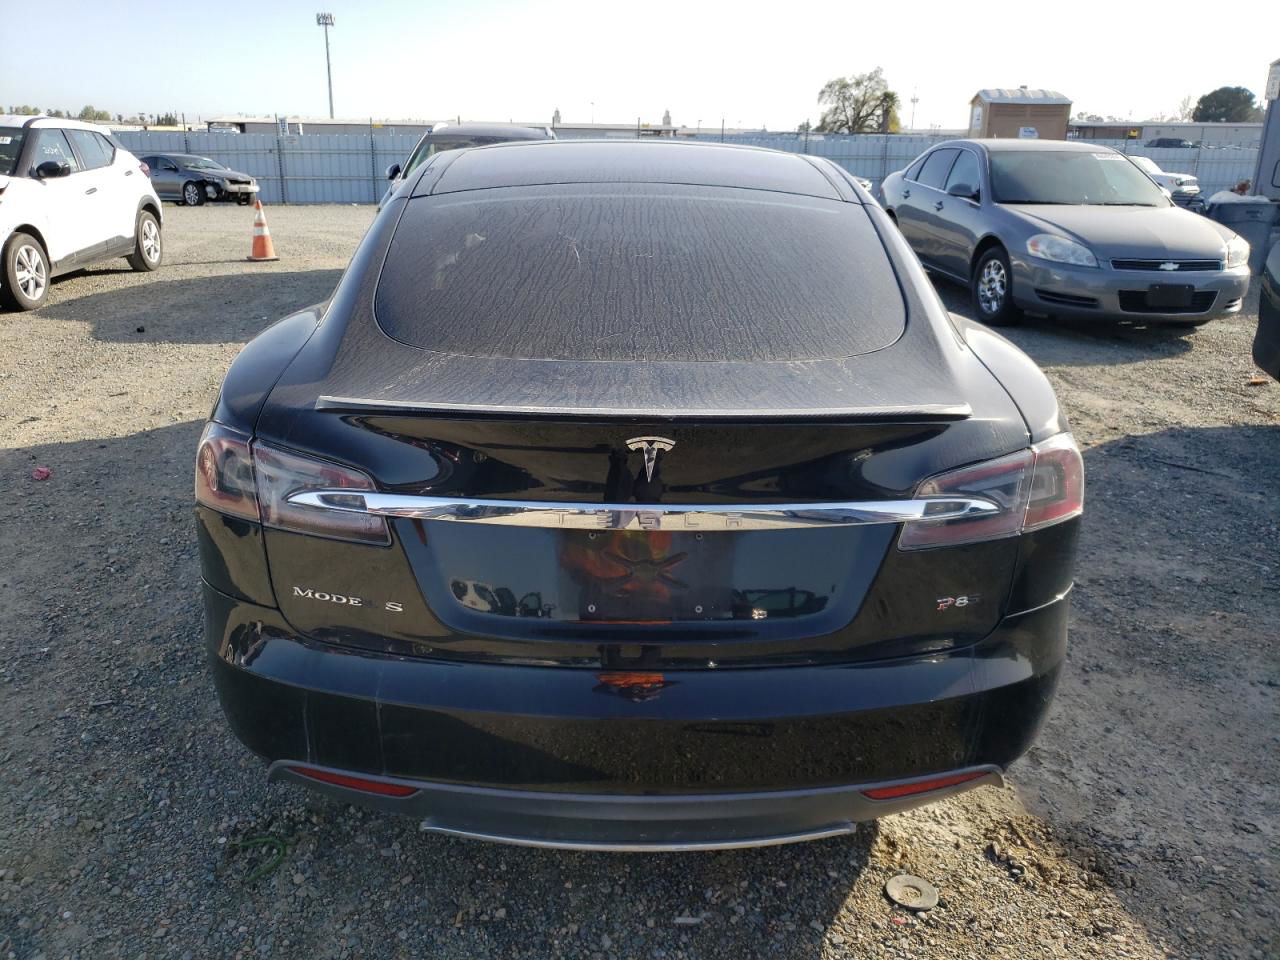 2013 Tesla Model S  Black vin: 5YJSA1CP0DFP08048